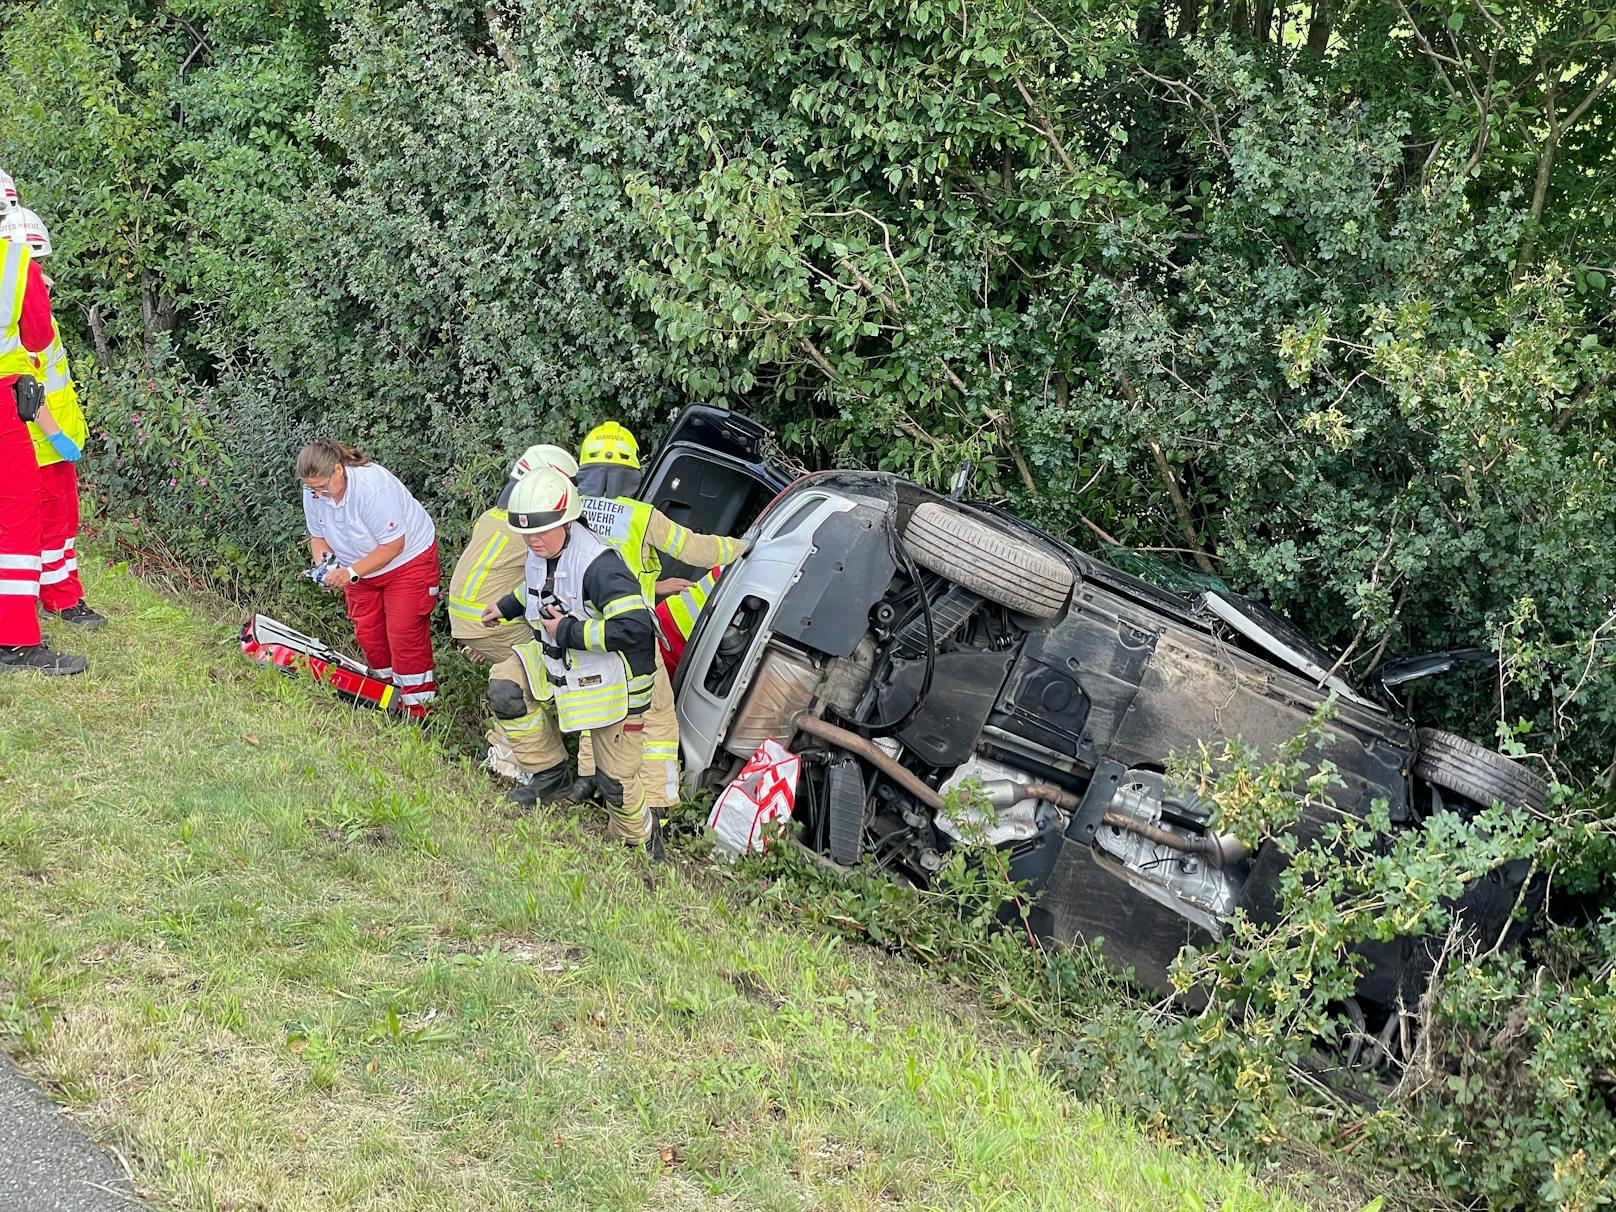 Am 19. September 2022 kam es auf der A12 Inntalautobahn bei Radfeld, Tirol, zu einem tödlichen Verkehrsunfall. Die Bilder der Unfallstelle.